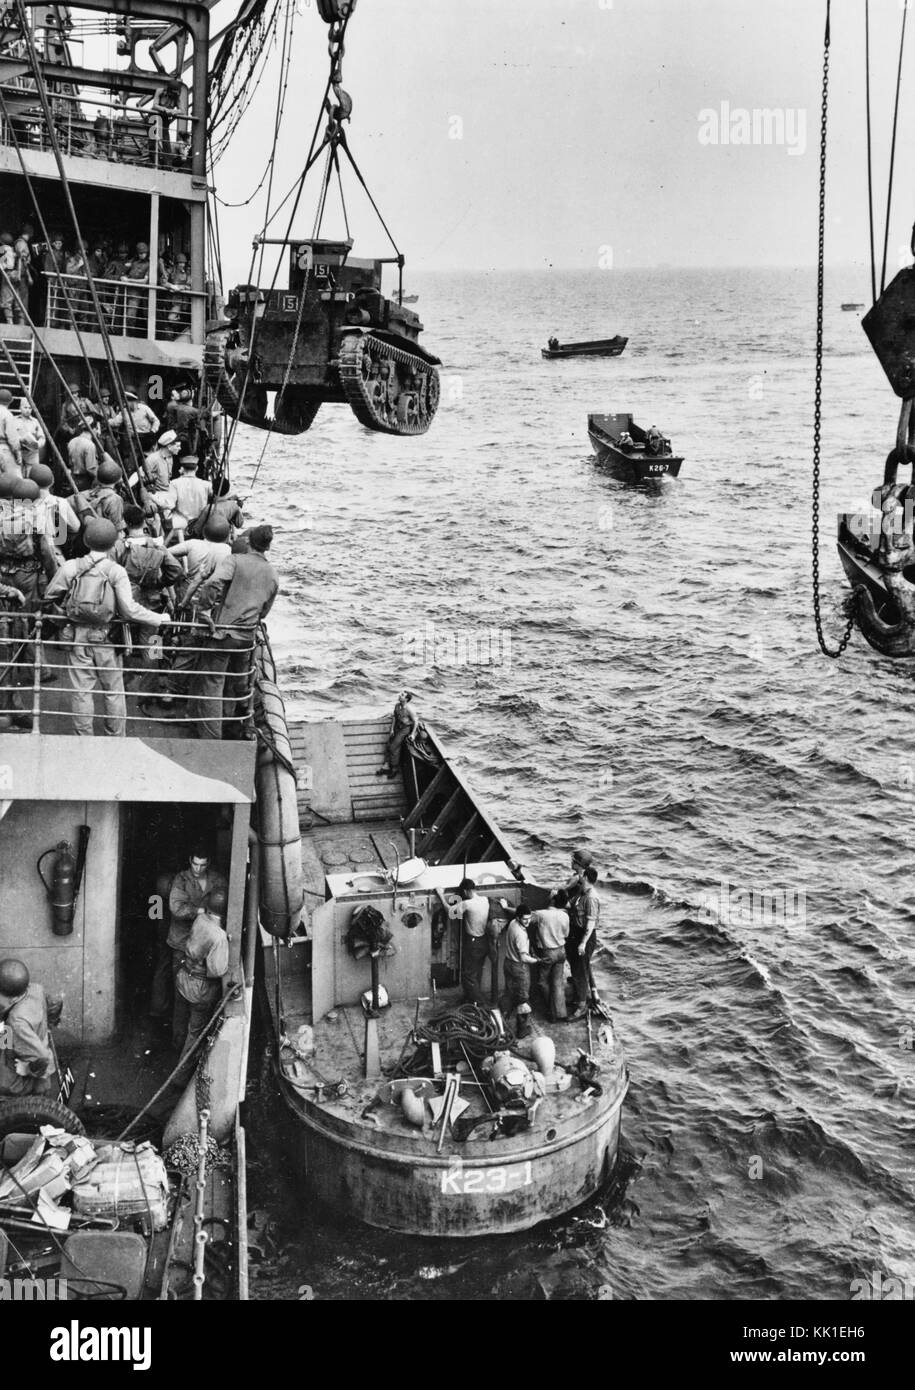 Guadalcanal-Tulagi les débarquements, 7-9 août 1942 Description : Un Corps des Marines américains M2A4 Stuart light tank est levé, de l'USS Alchiba (AK-23) dans un LCM(2) des engins de débarquement, au large de l'invasion de Guadalcanal plages sur la première journée des débarquements, il y a 7 août 1942. Banque D'Images